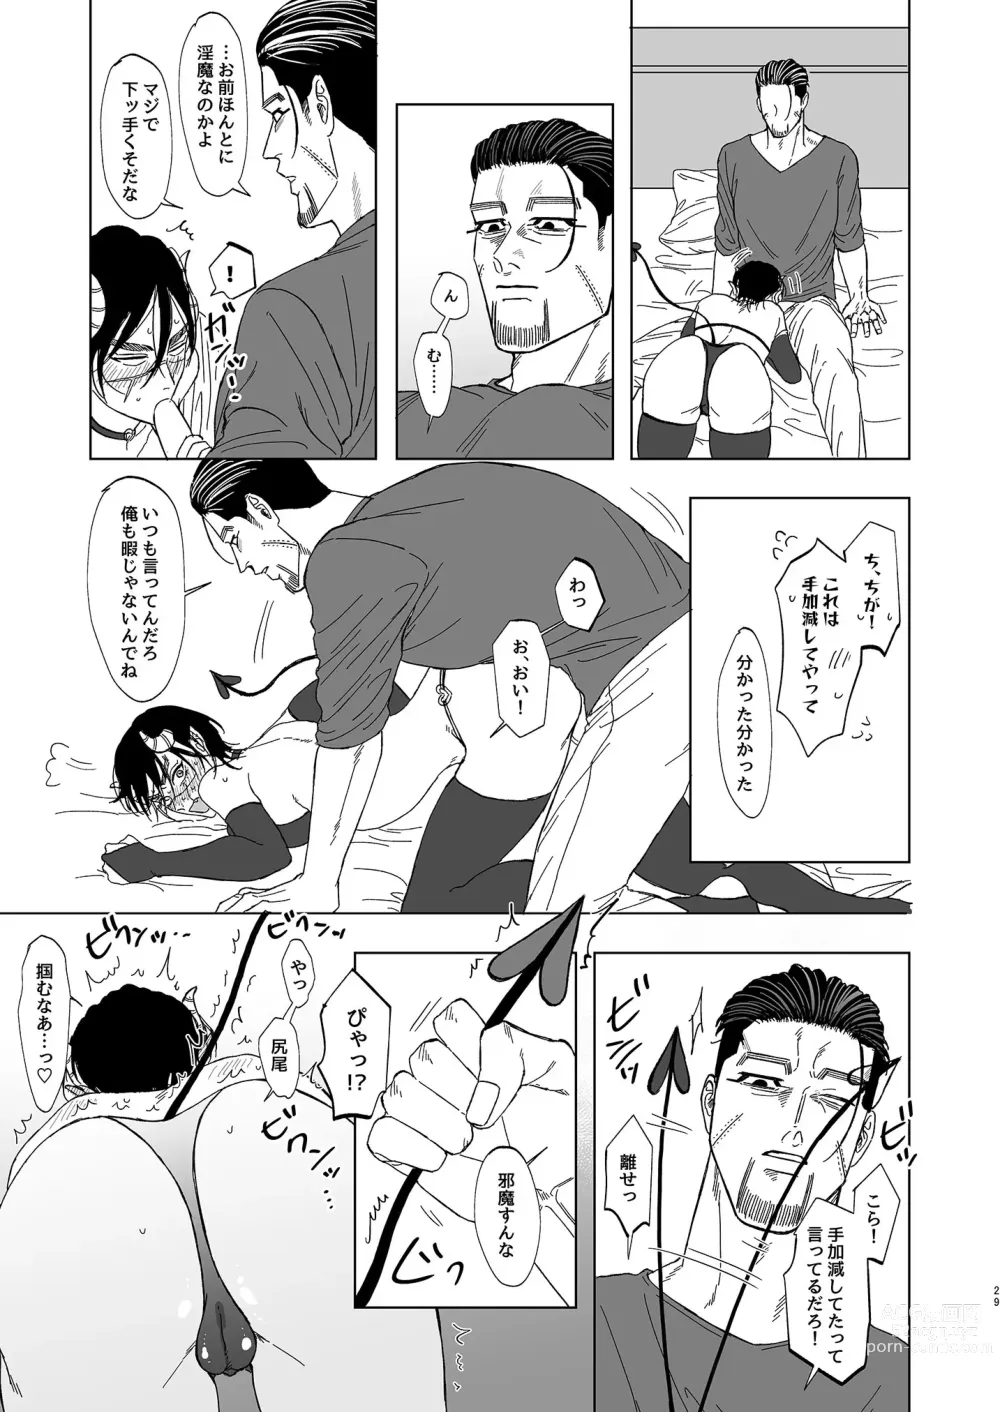 Page 28 of doujinshi Ogata Hyakunosuke no Gisou Kekkon